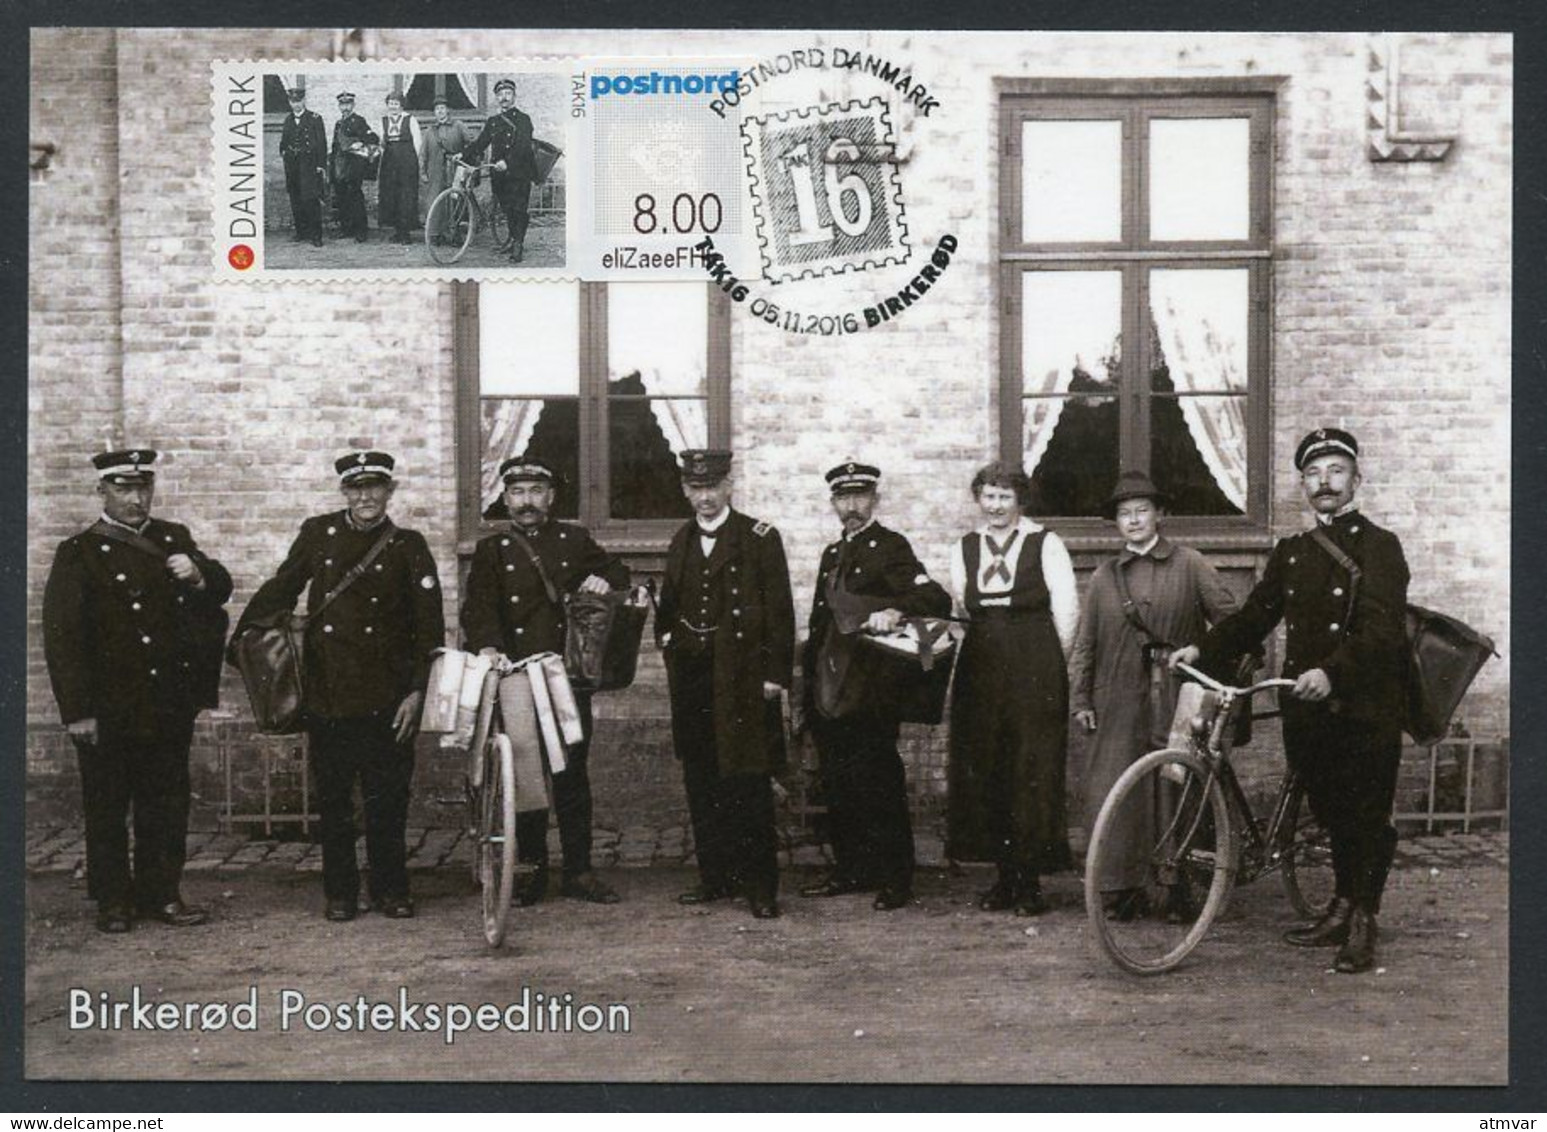 DENMARK (2016) Carte Maximum Card ATM TAK16 - Birkerød Postekspedition (1908) Postmen, Facteurs à Bicyclette Bicycle - Cartes-maximum (CM)